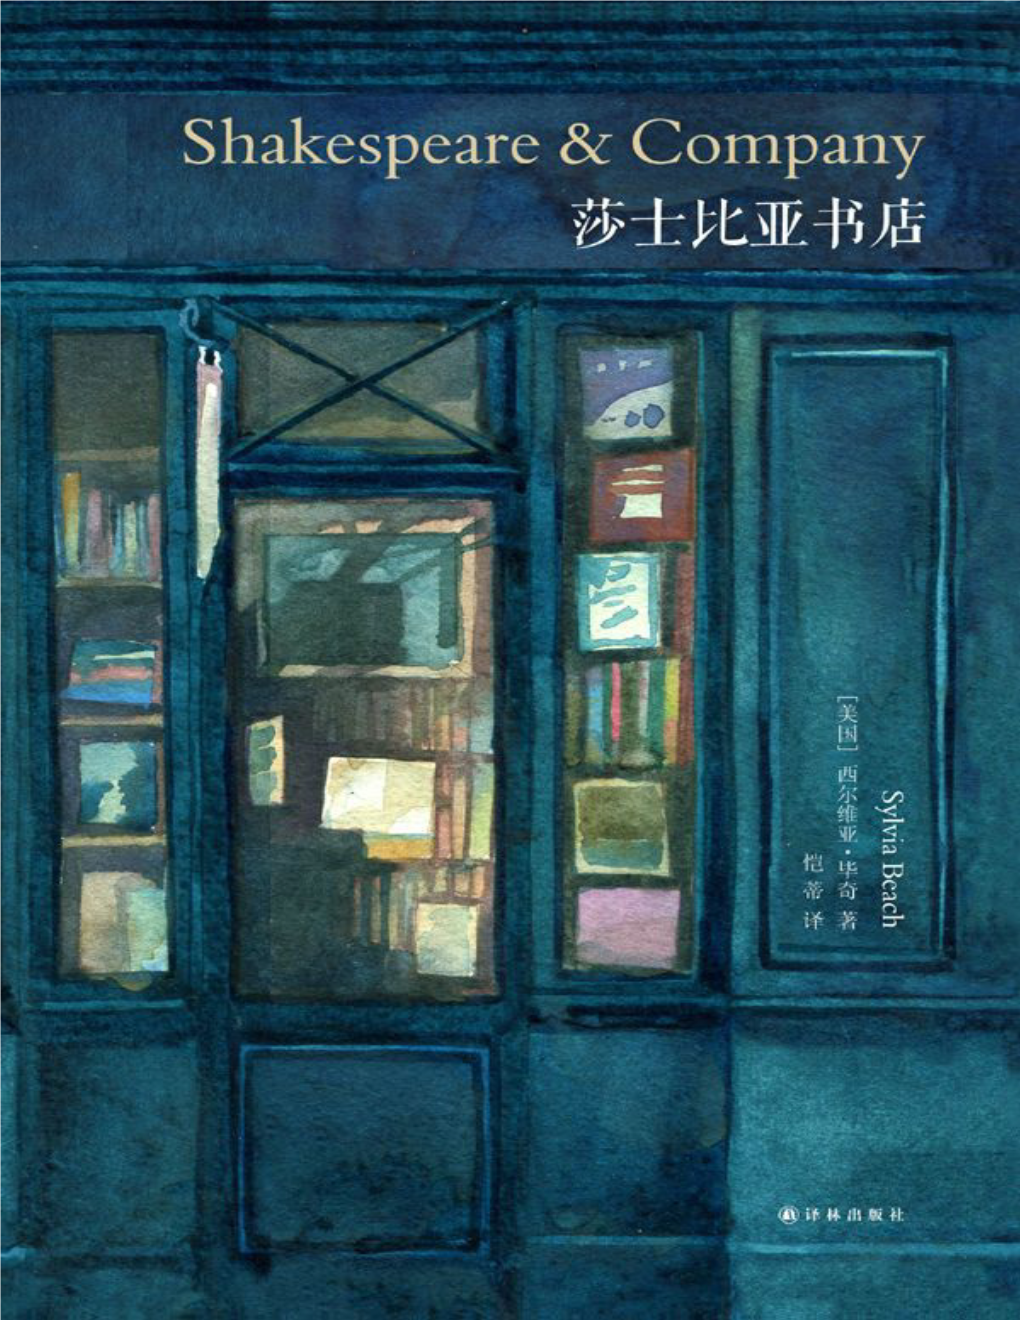 莎士比亚书店/（美）毕奇（Beach, S.）著；恺蒂译.——南京：译 林出版社，2014.2